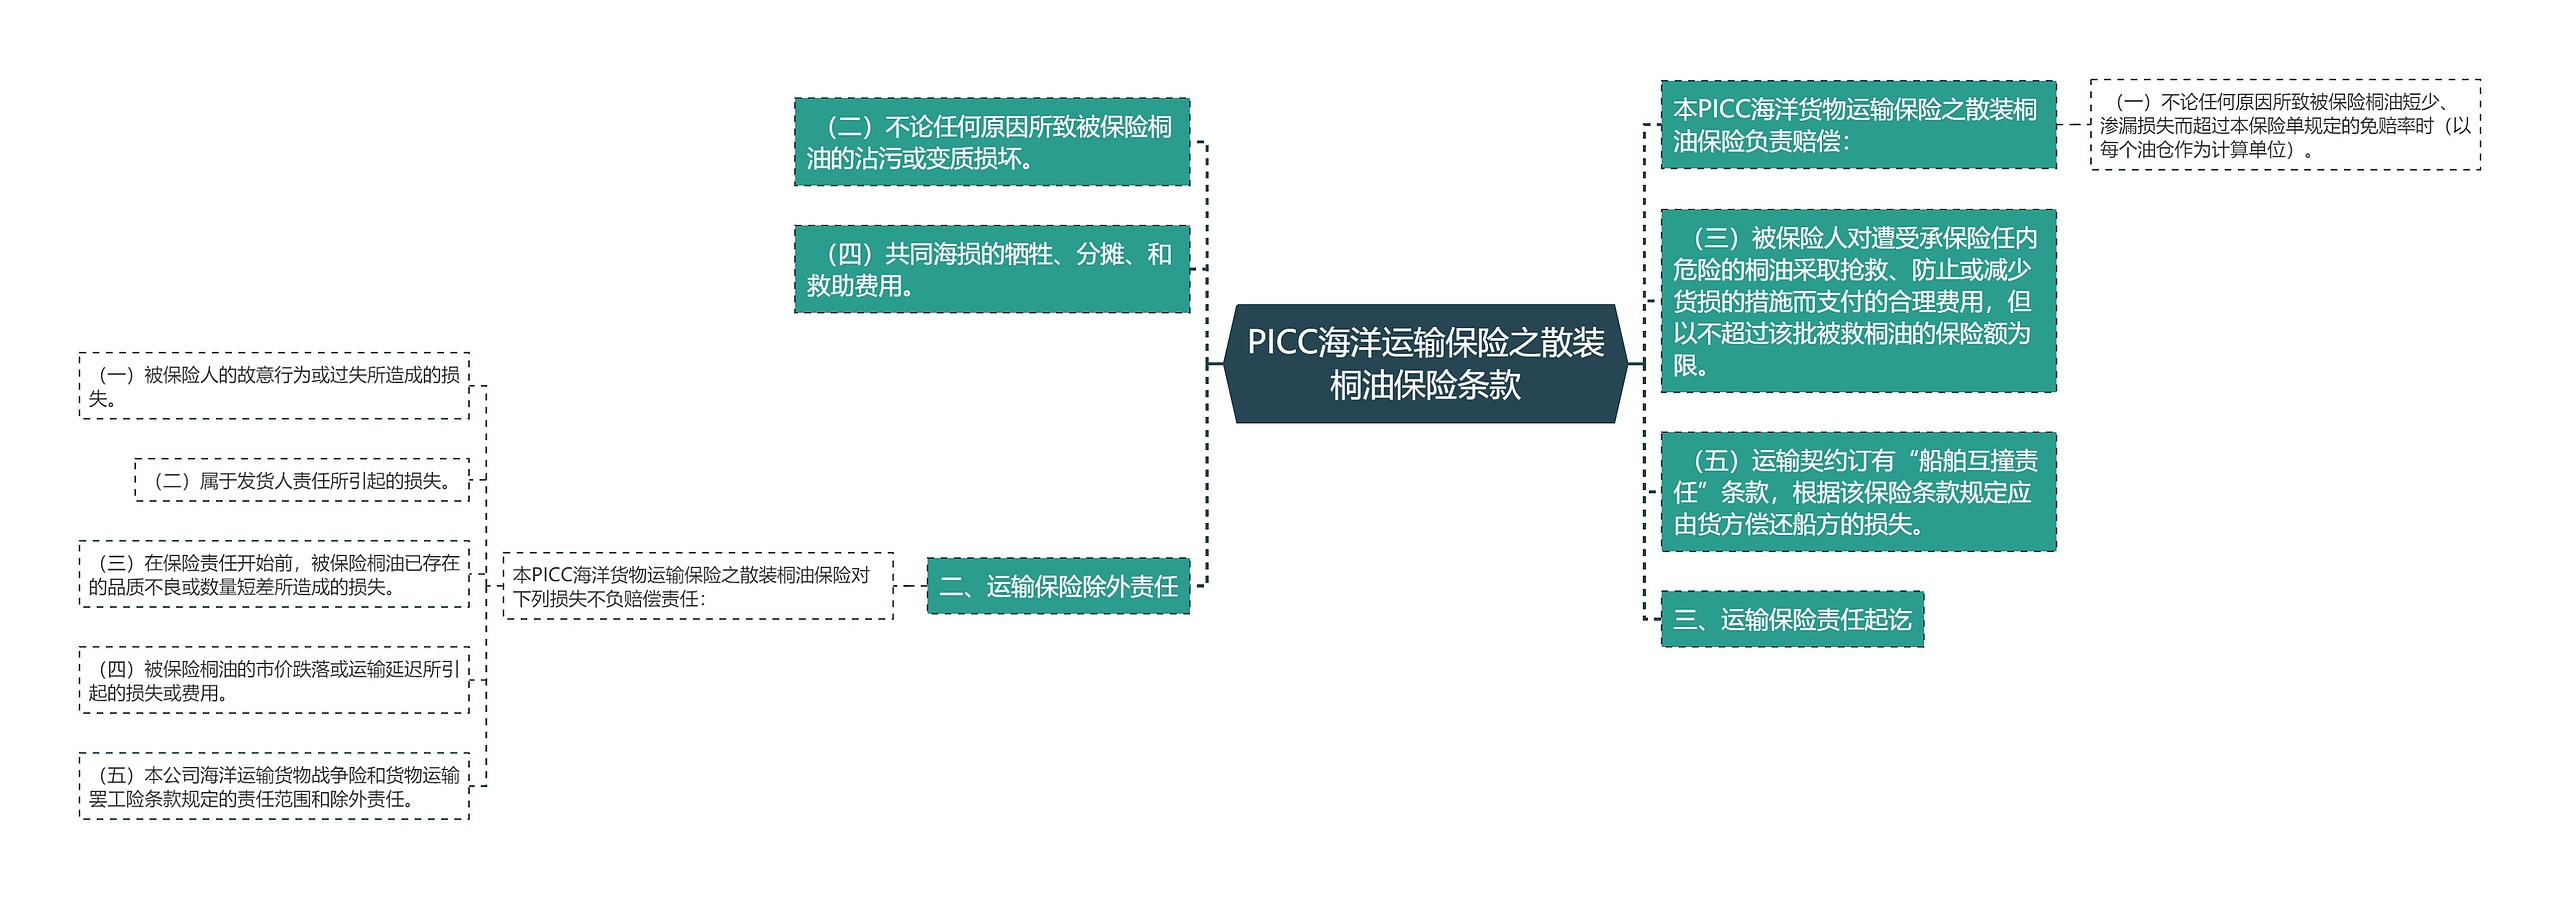 PICC海洋运输保险之散装桐油保险条款思维导图